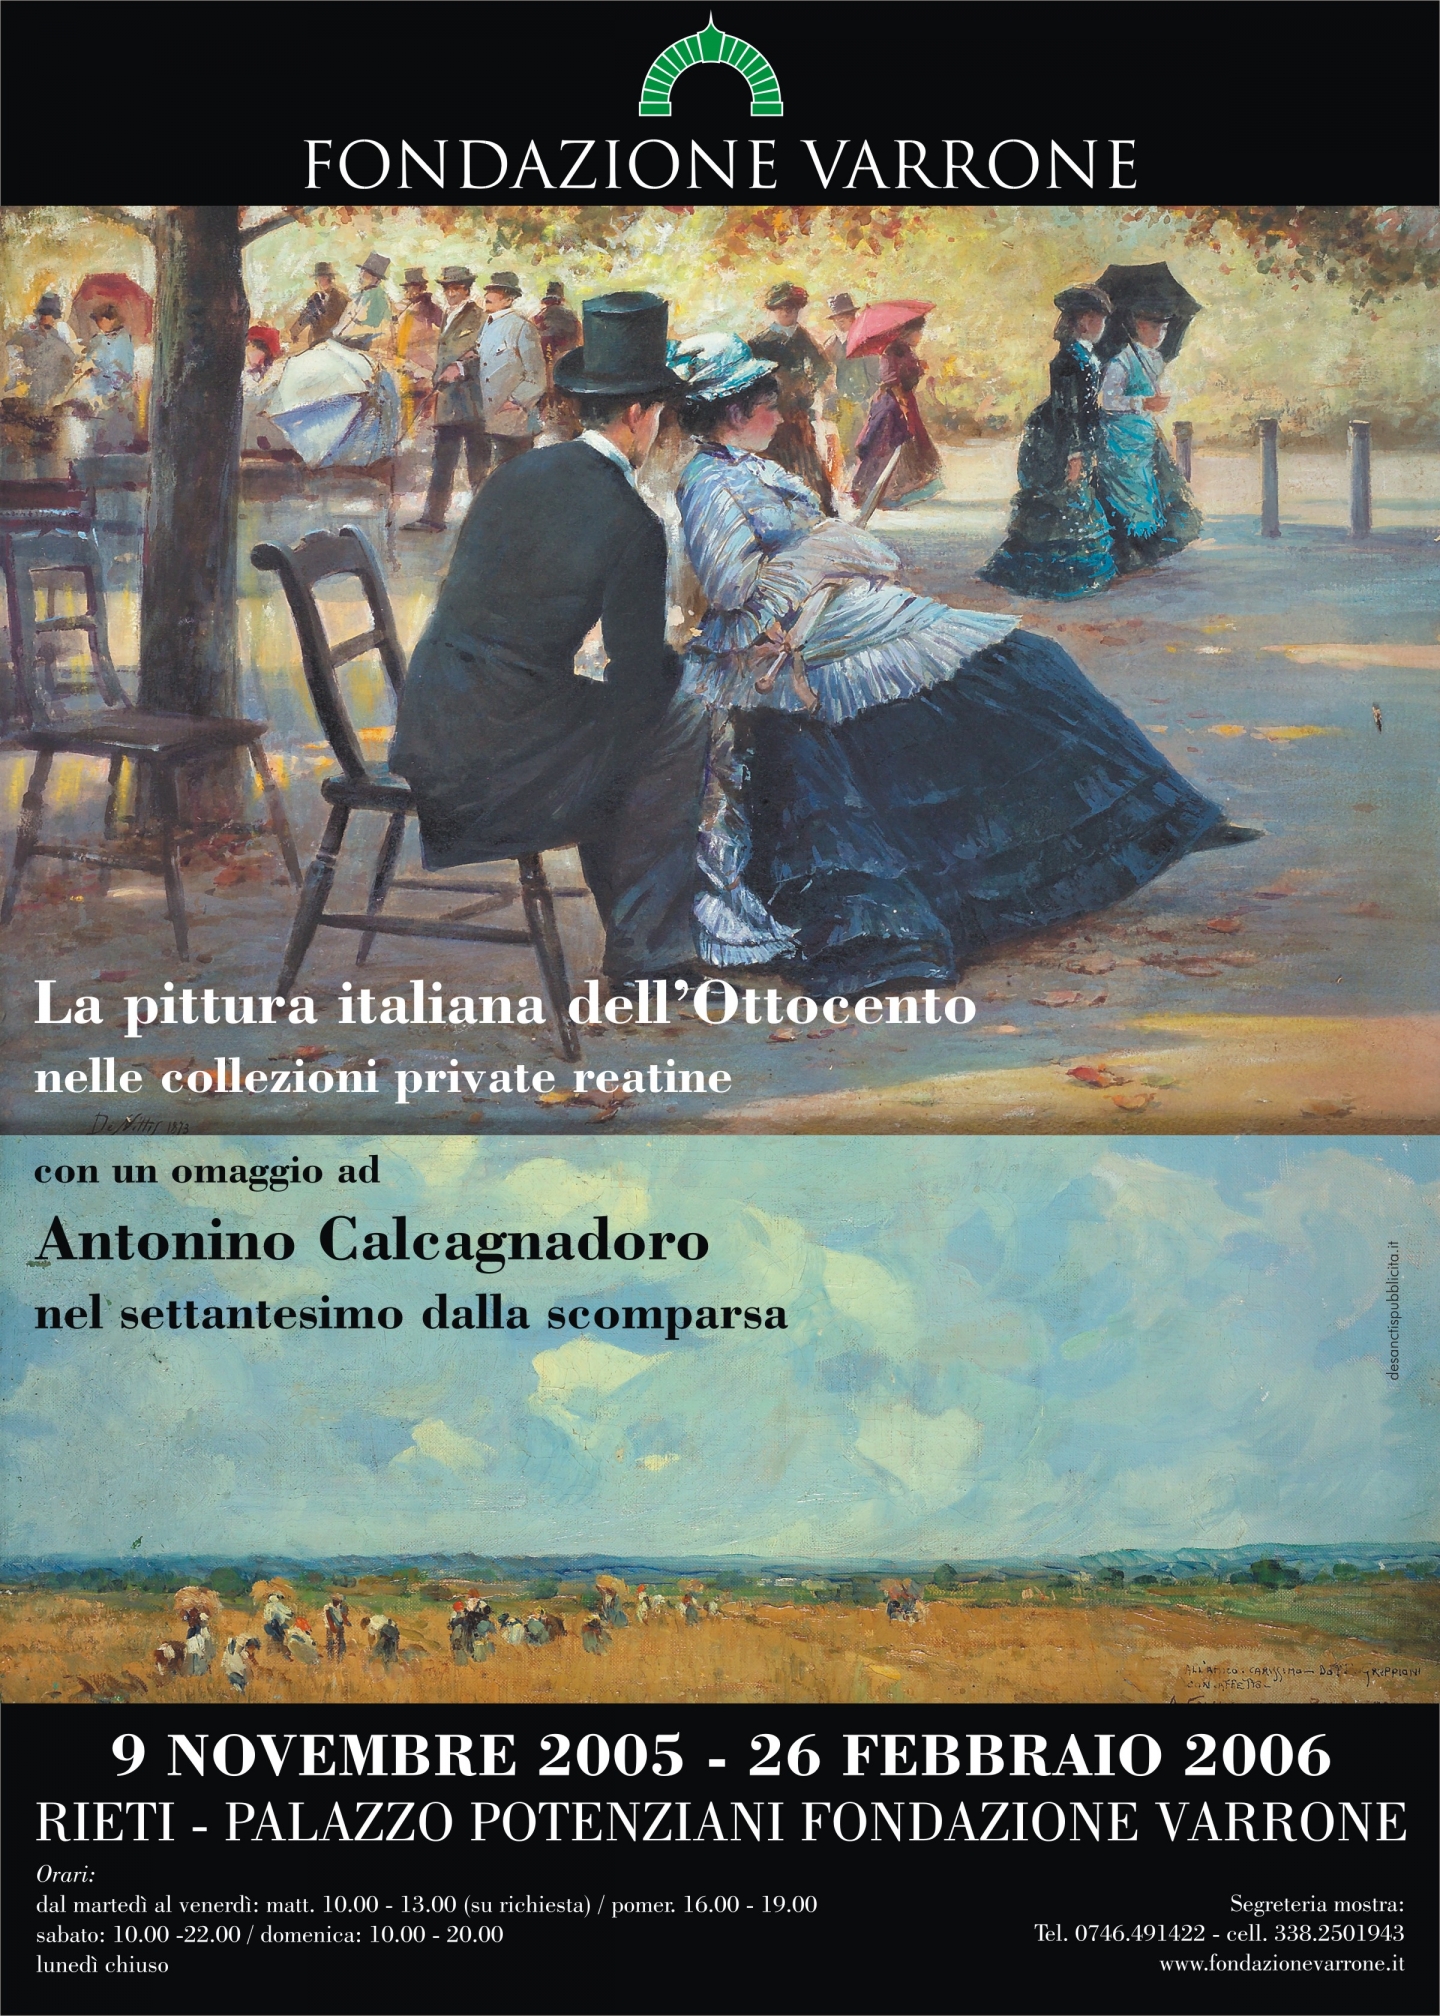 La pittura italiana dell’Ottocento nelle collezioni private reatine con un omaggio ad Antonino Calcagnadoro nel settantesimo dalla scomparsa